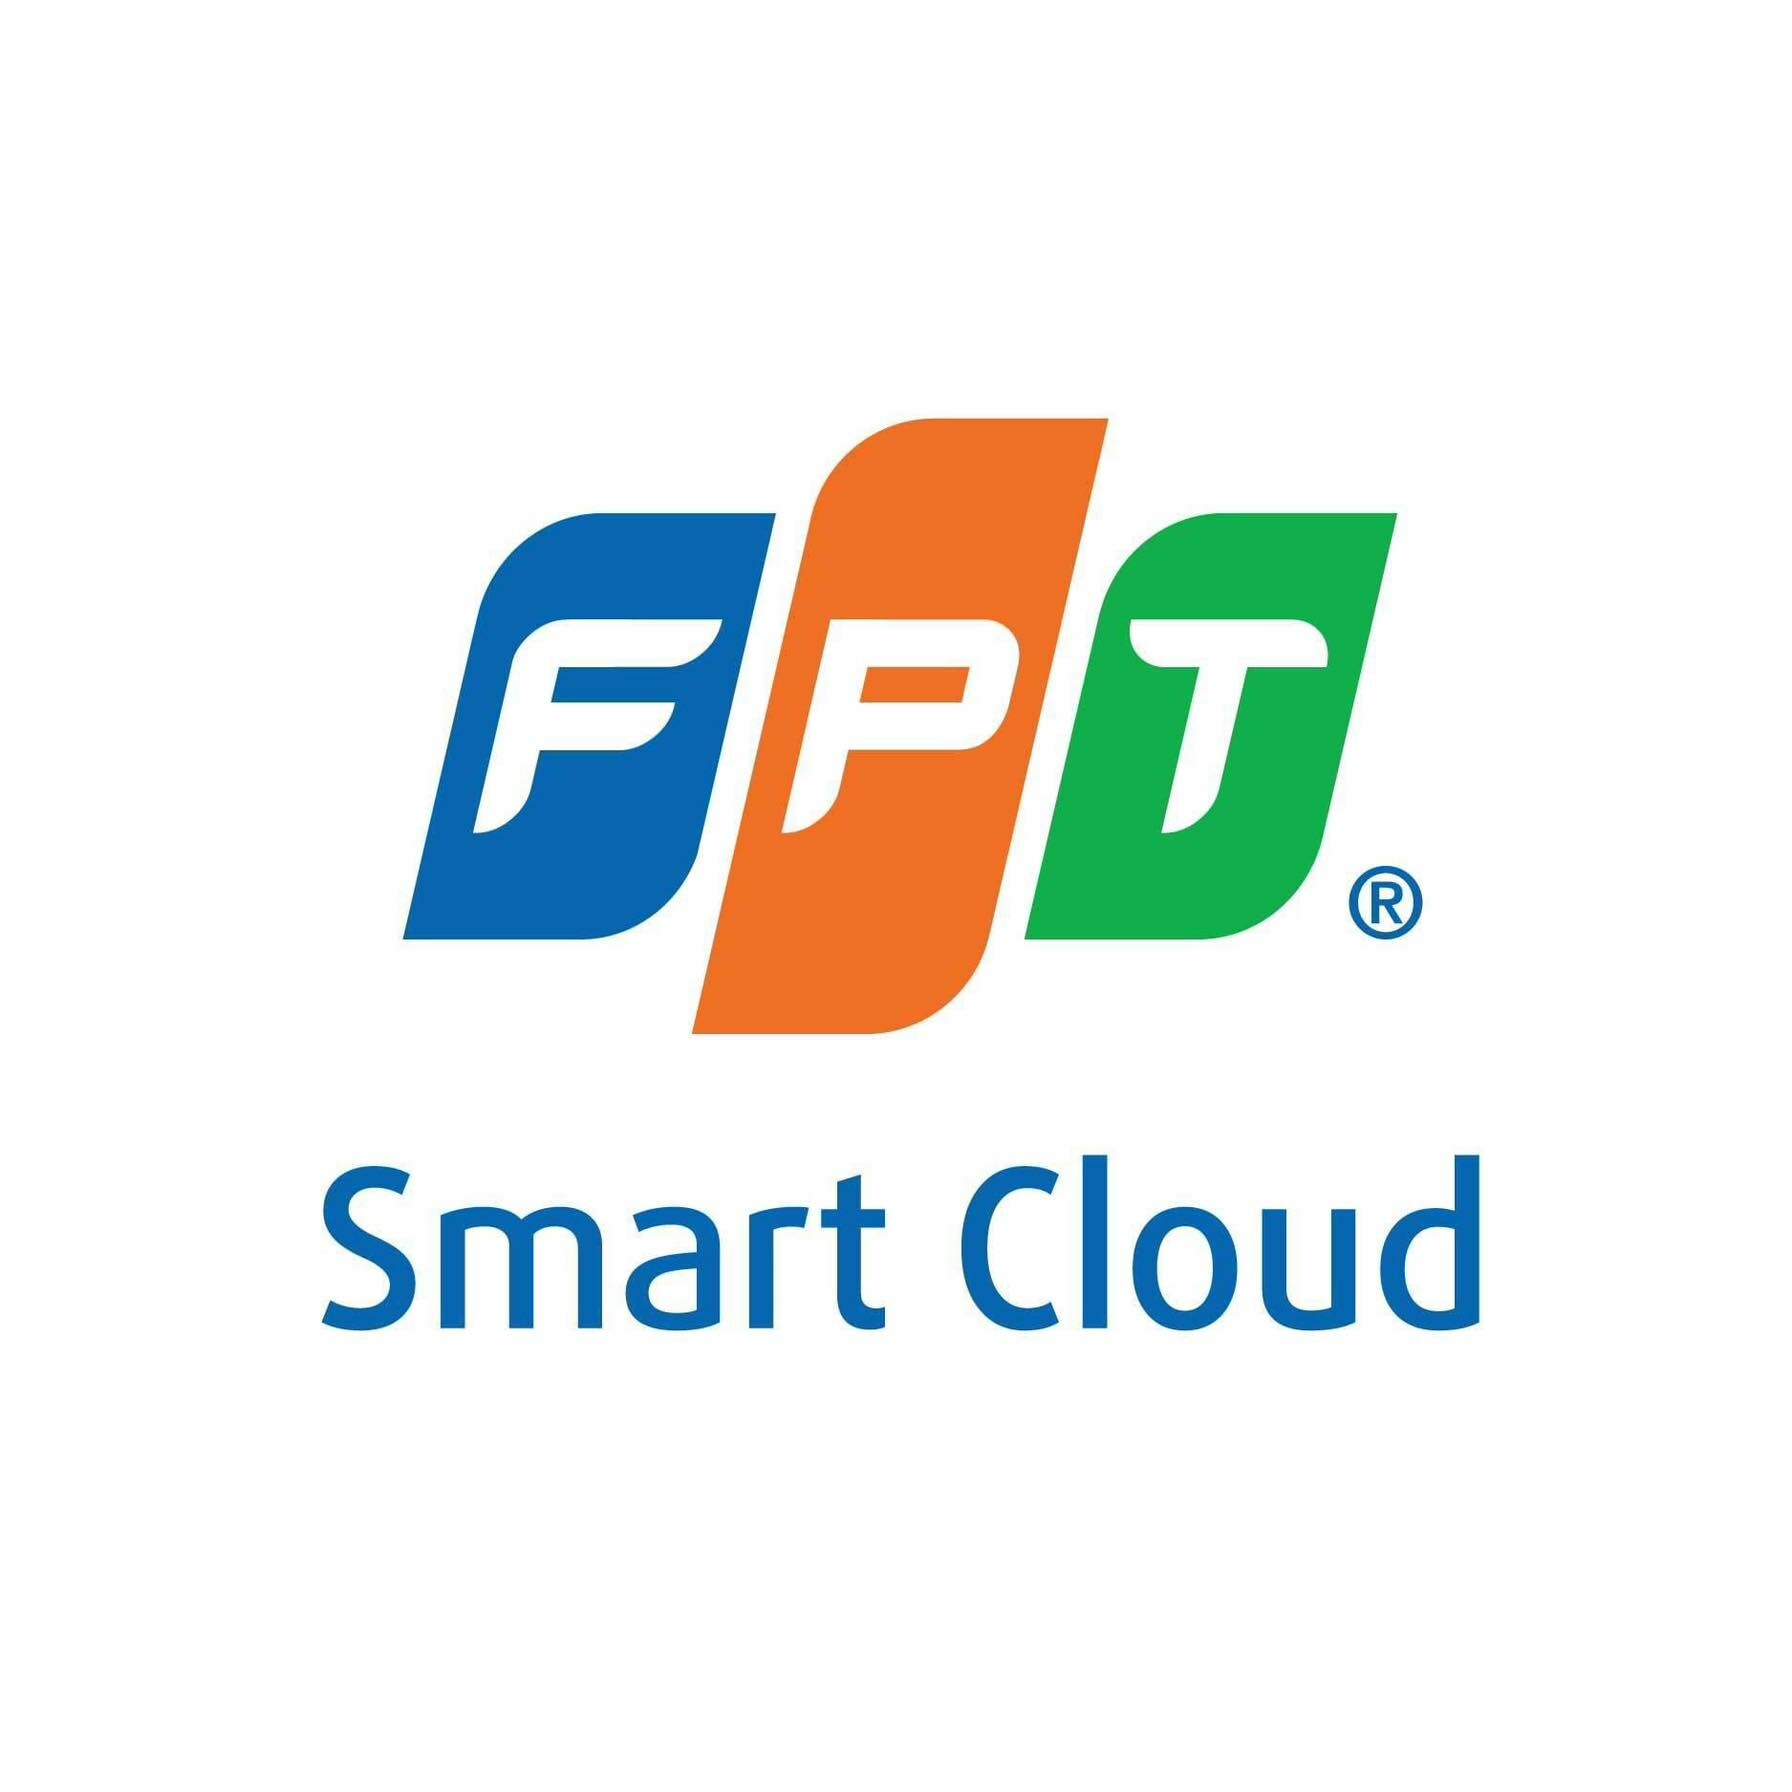 FPT Smart Cloud